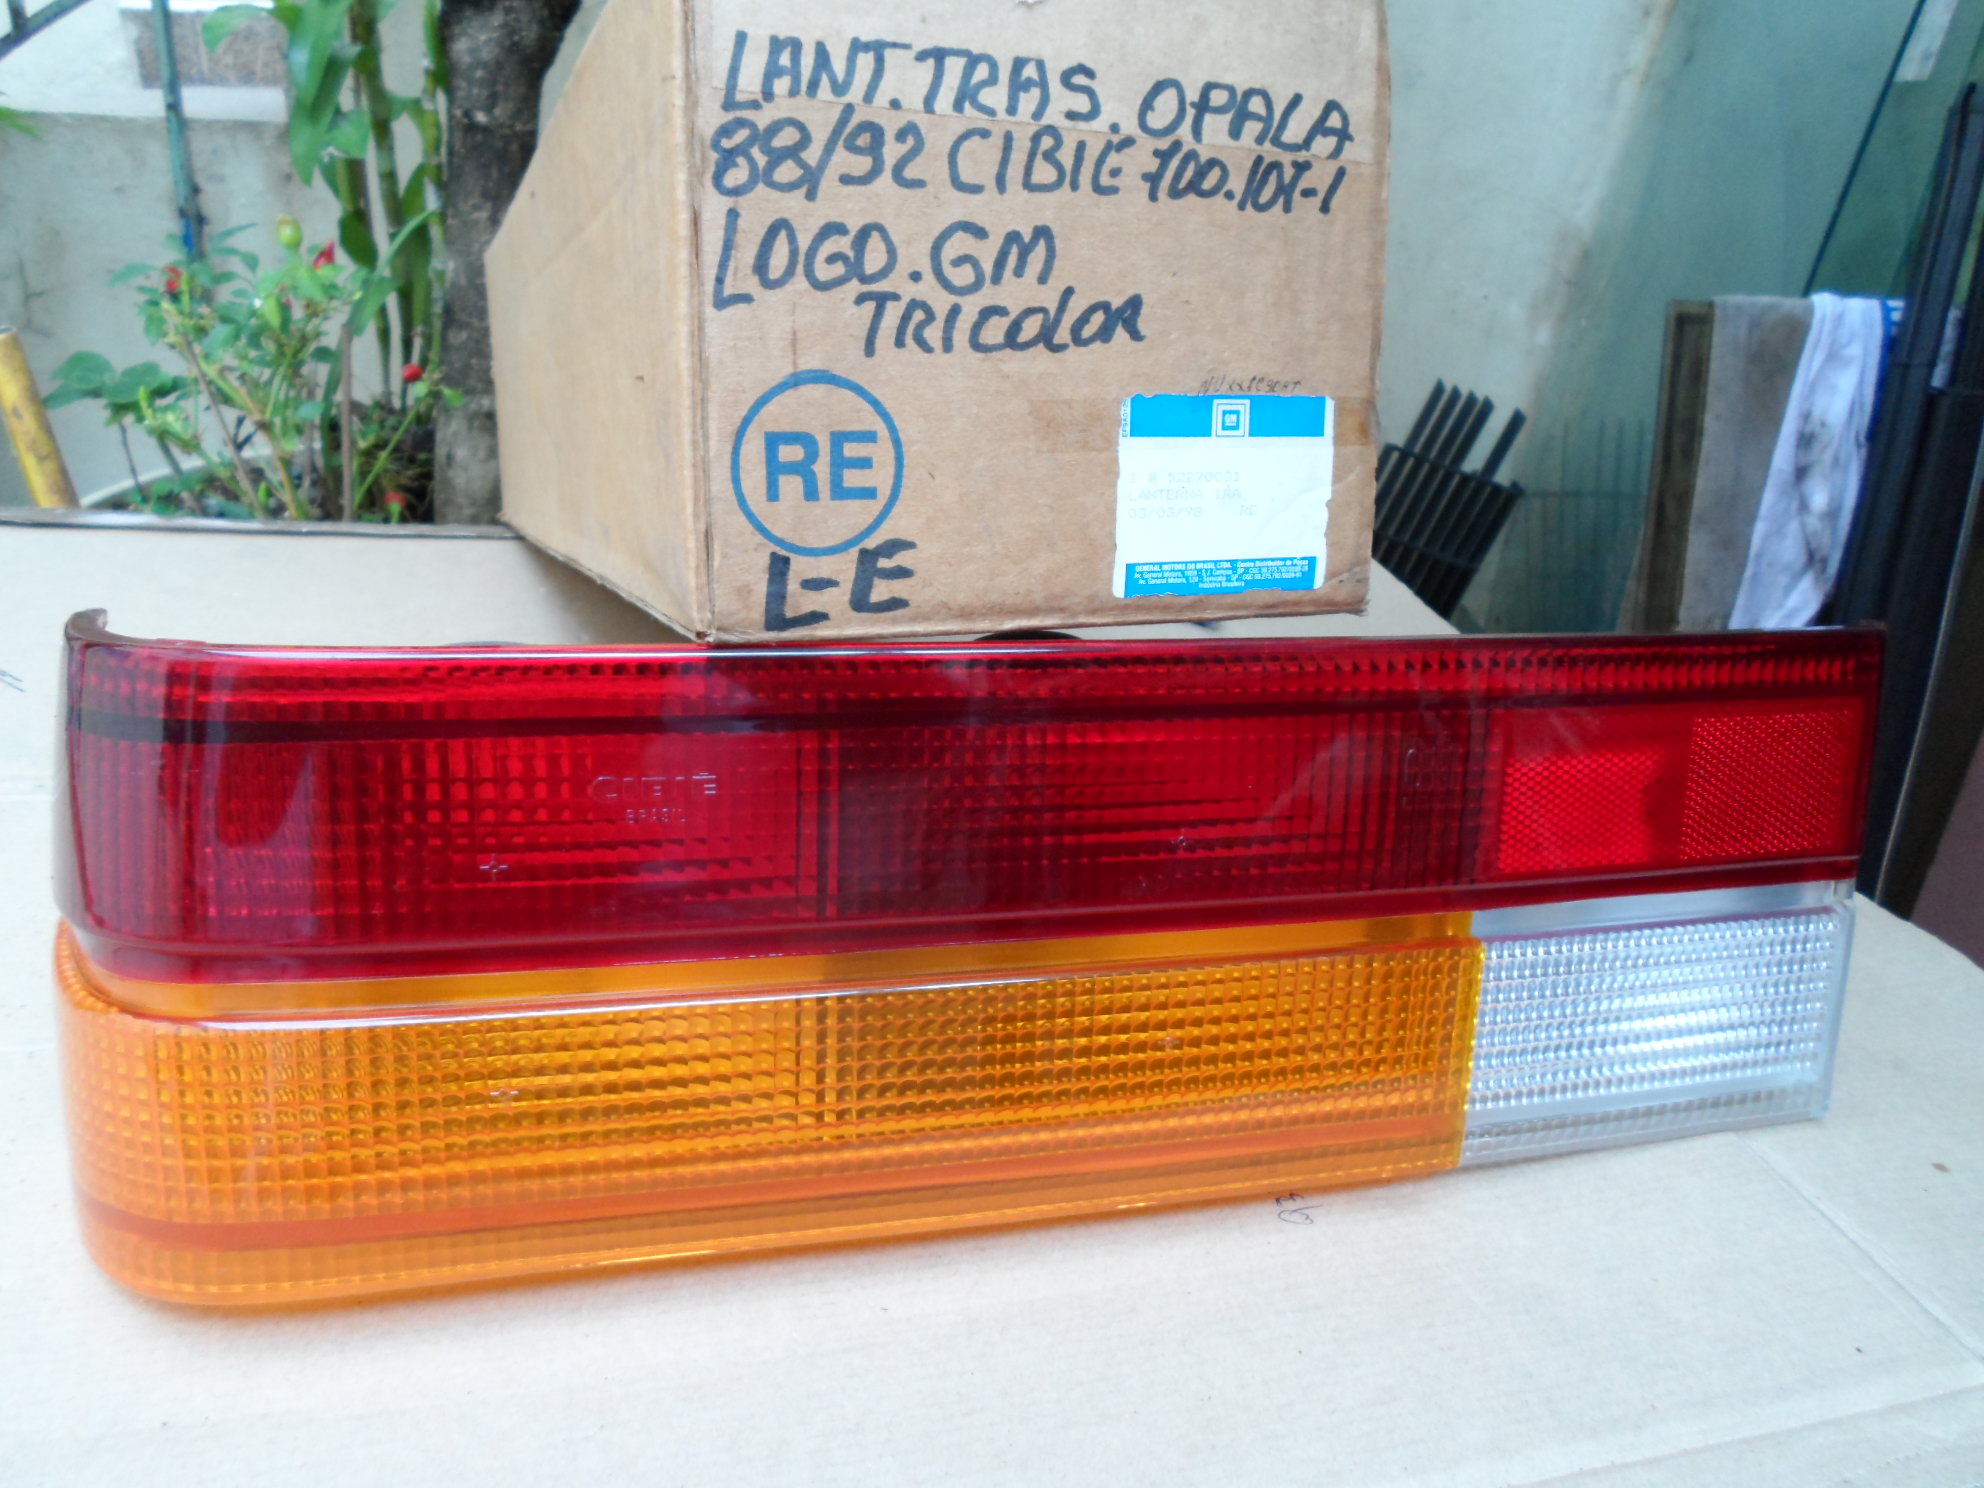 Lanterna Tricolor traseira L/esq Original Gm Cibie Opala 88/92 logo GM Lente